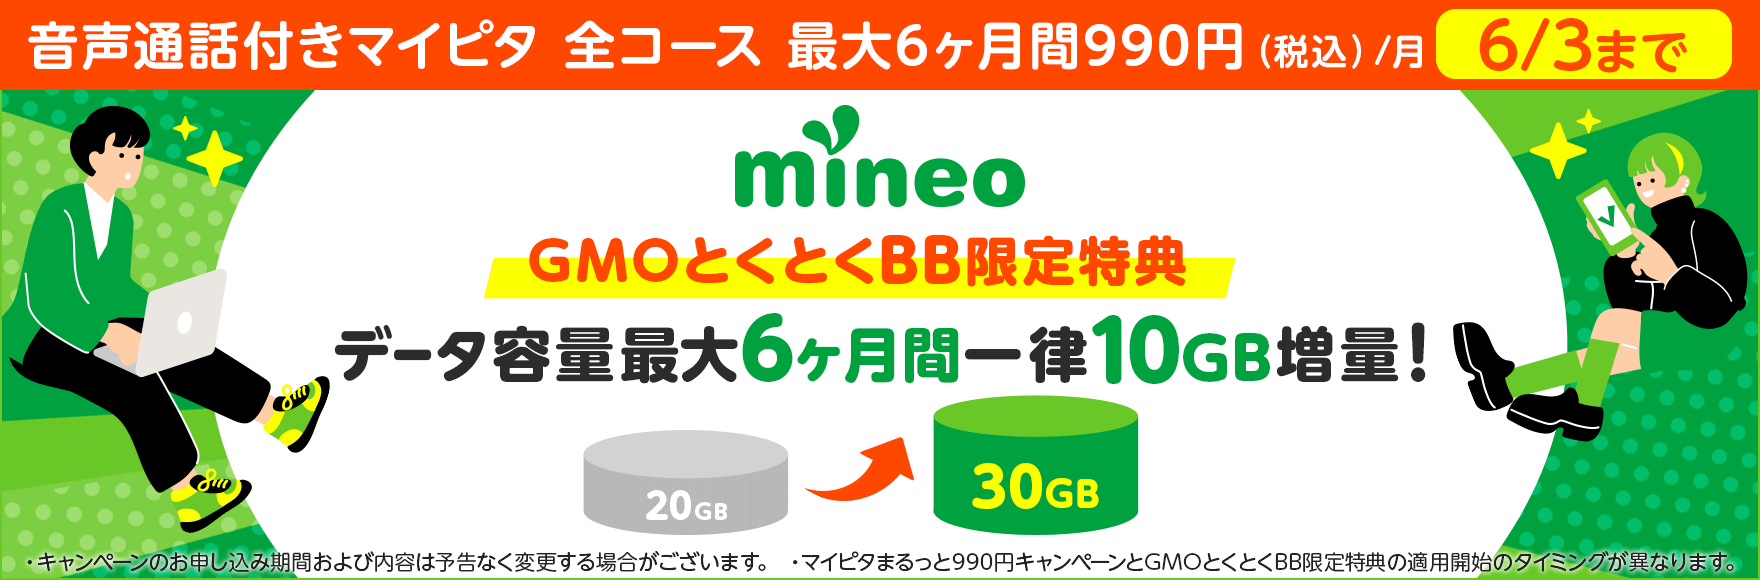 mineo GMOとくとくBB限定特典